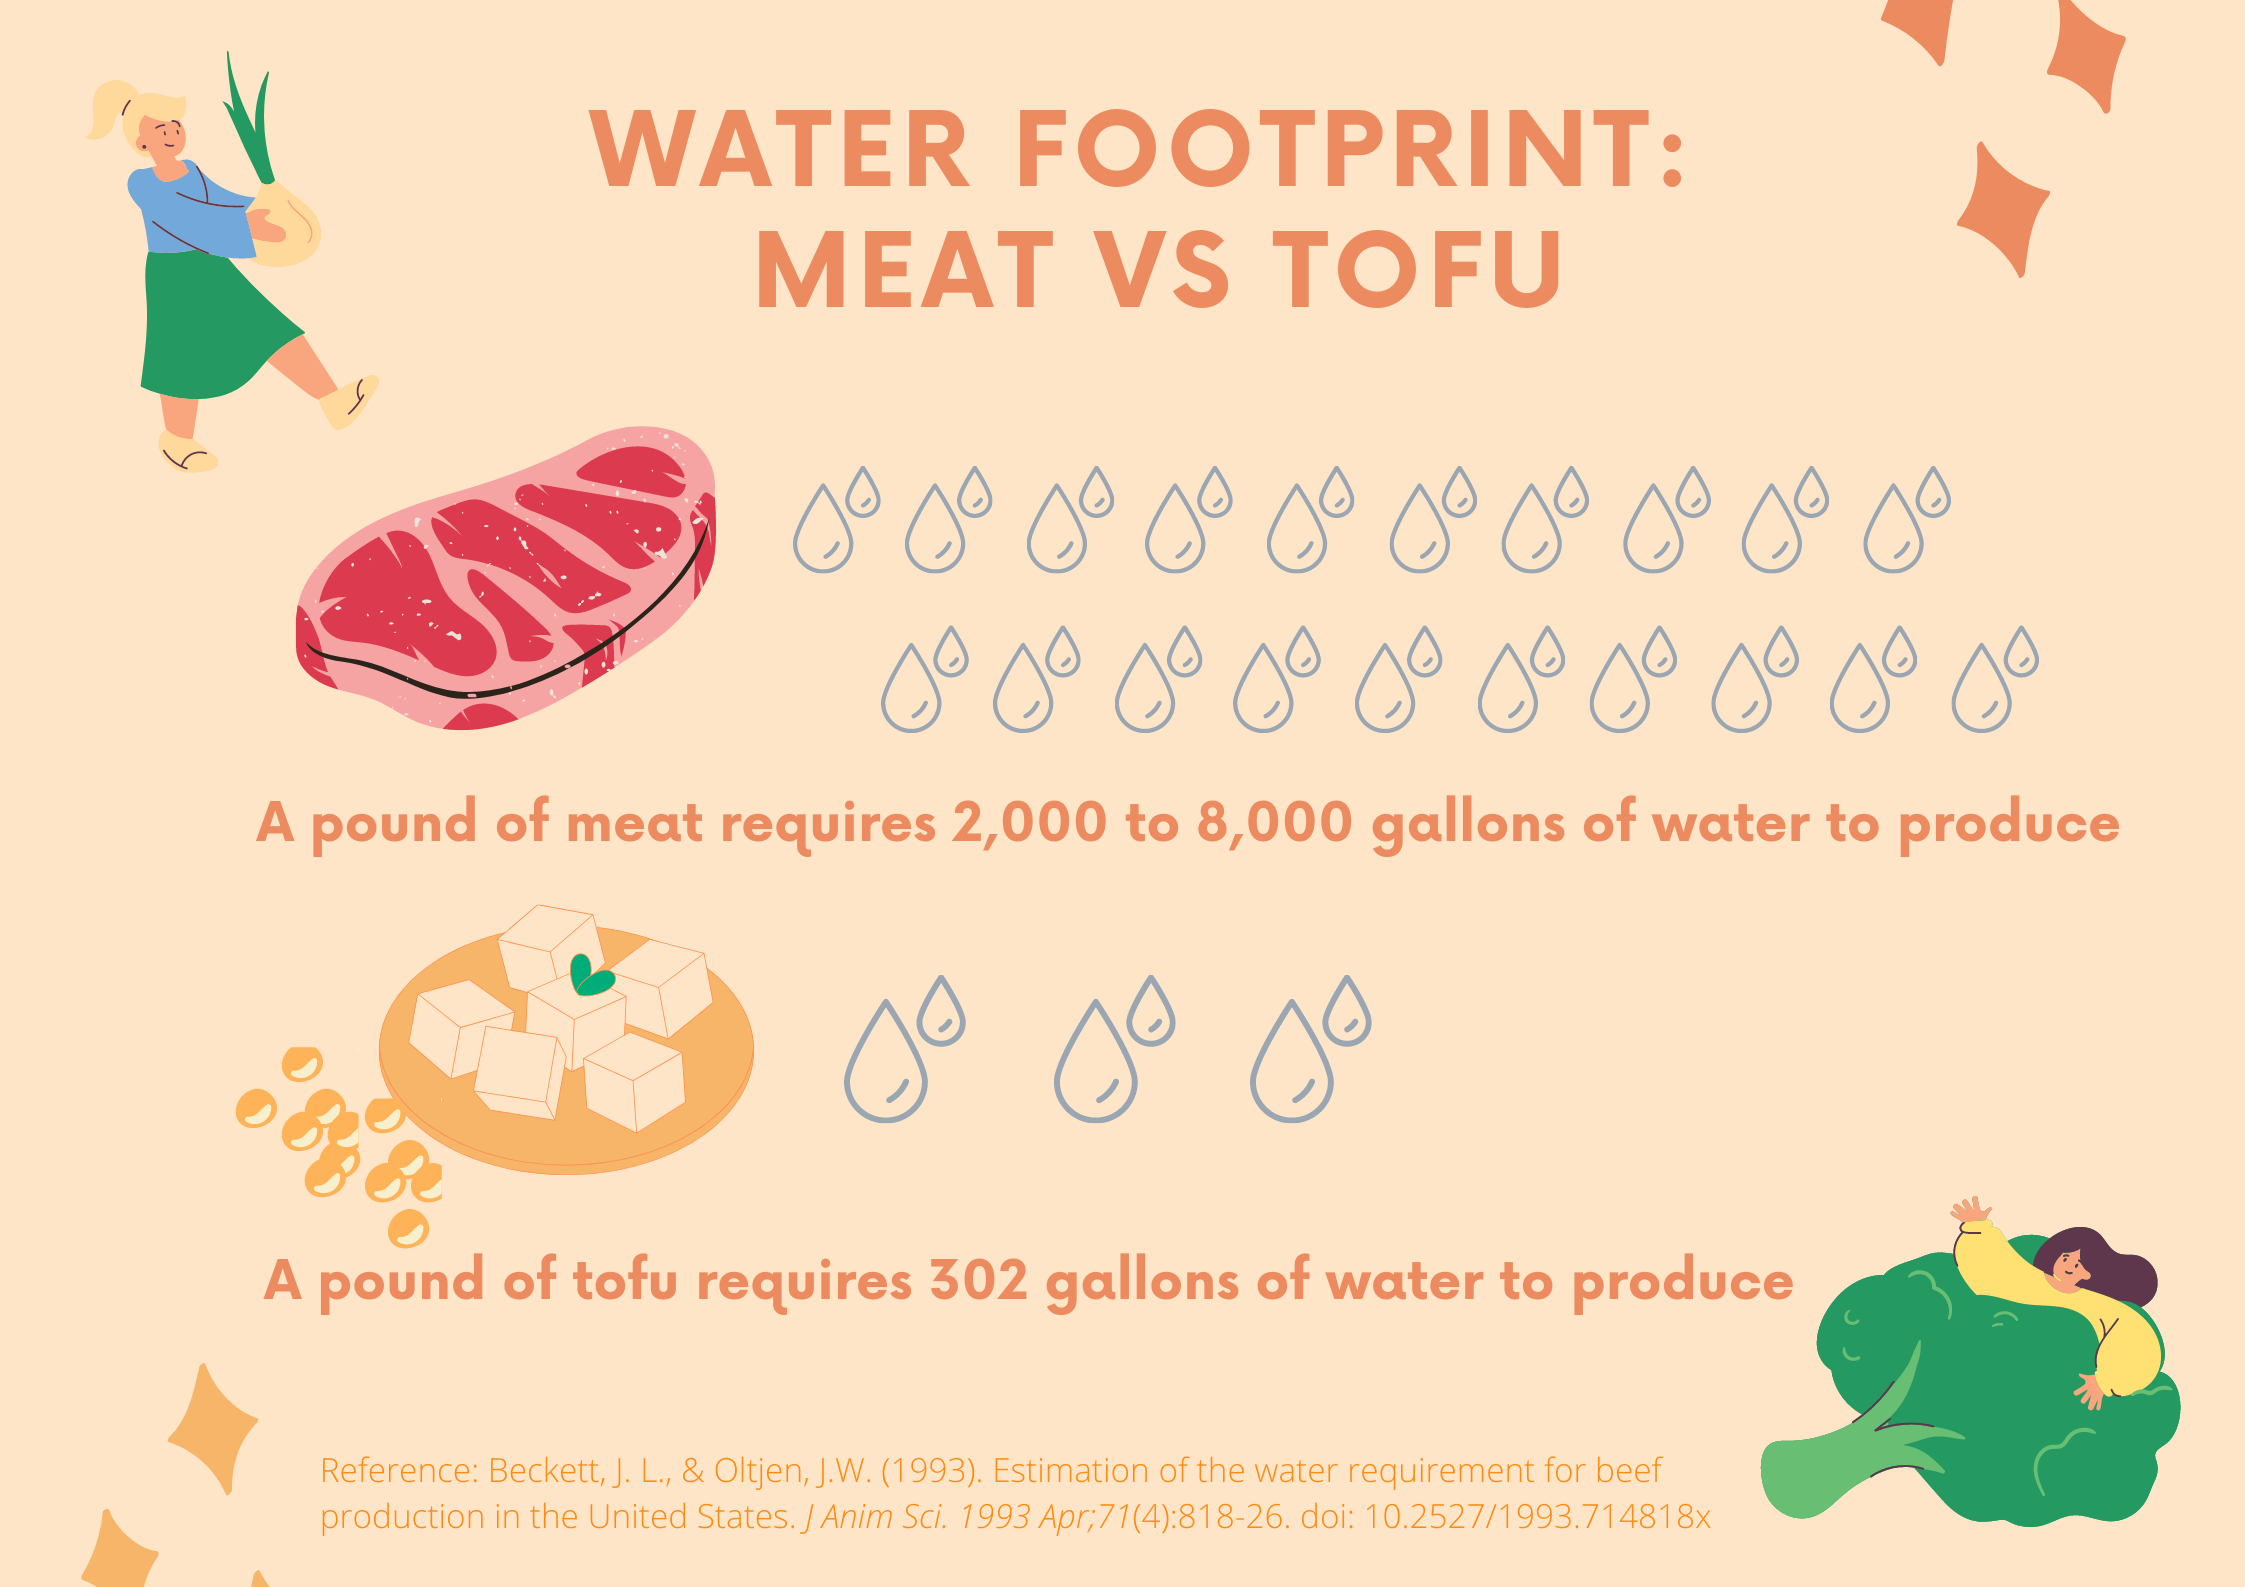 Water footprint example: meat vs tofu